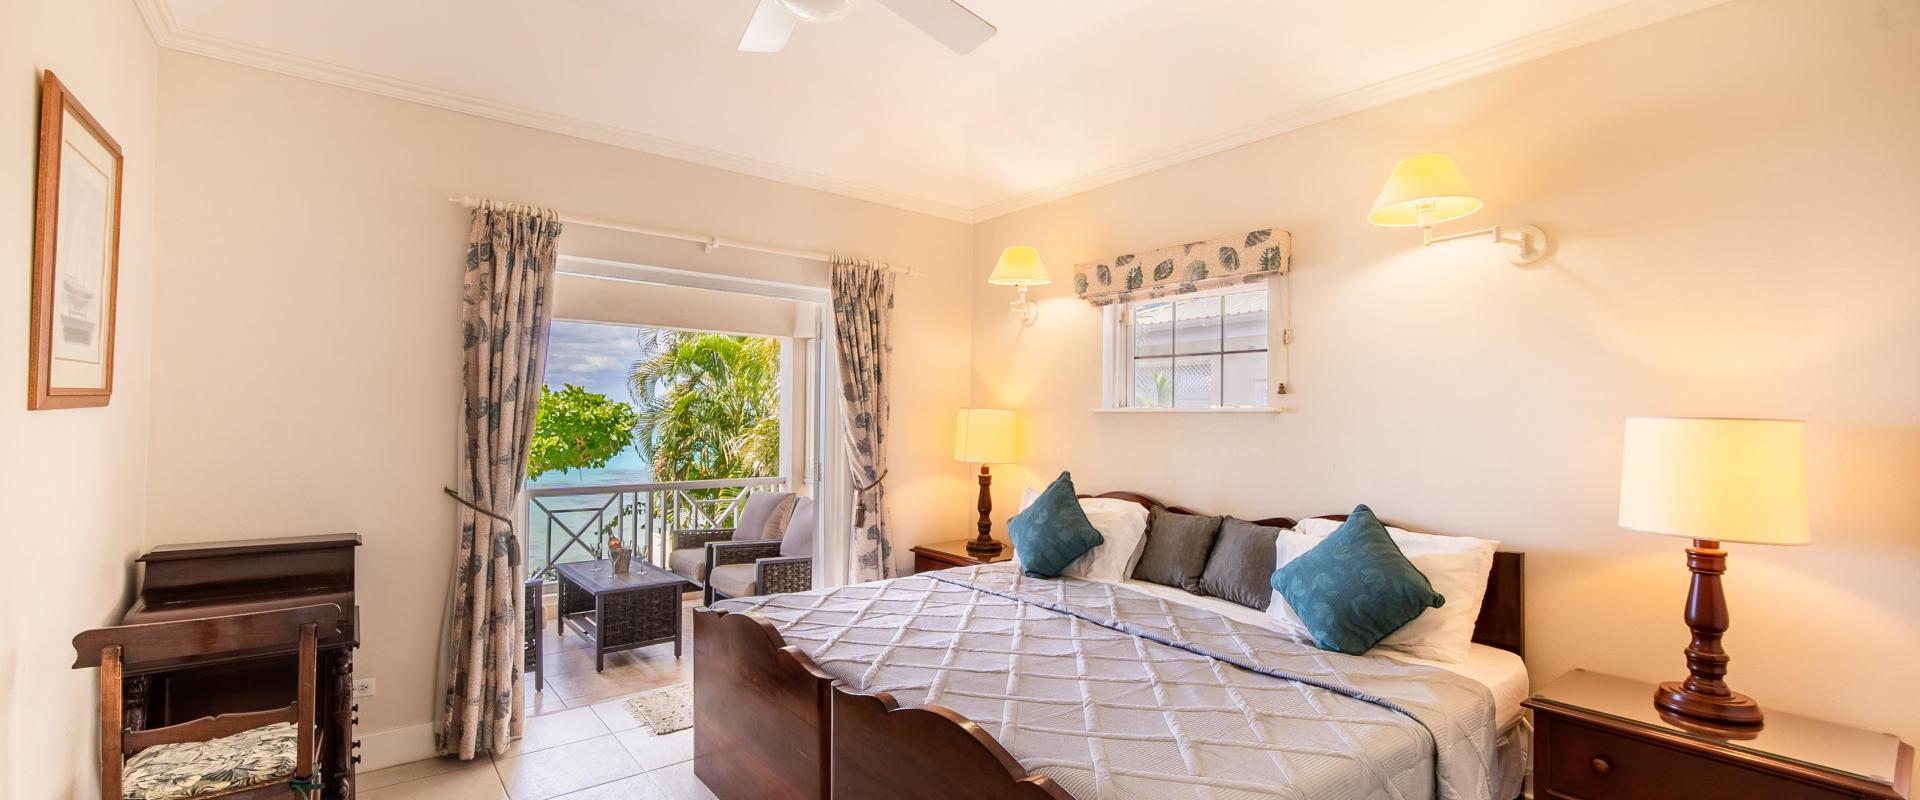 Barbados Beachfront Vacation Rental Villa Seawards Bedroom 2 With Patio Access